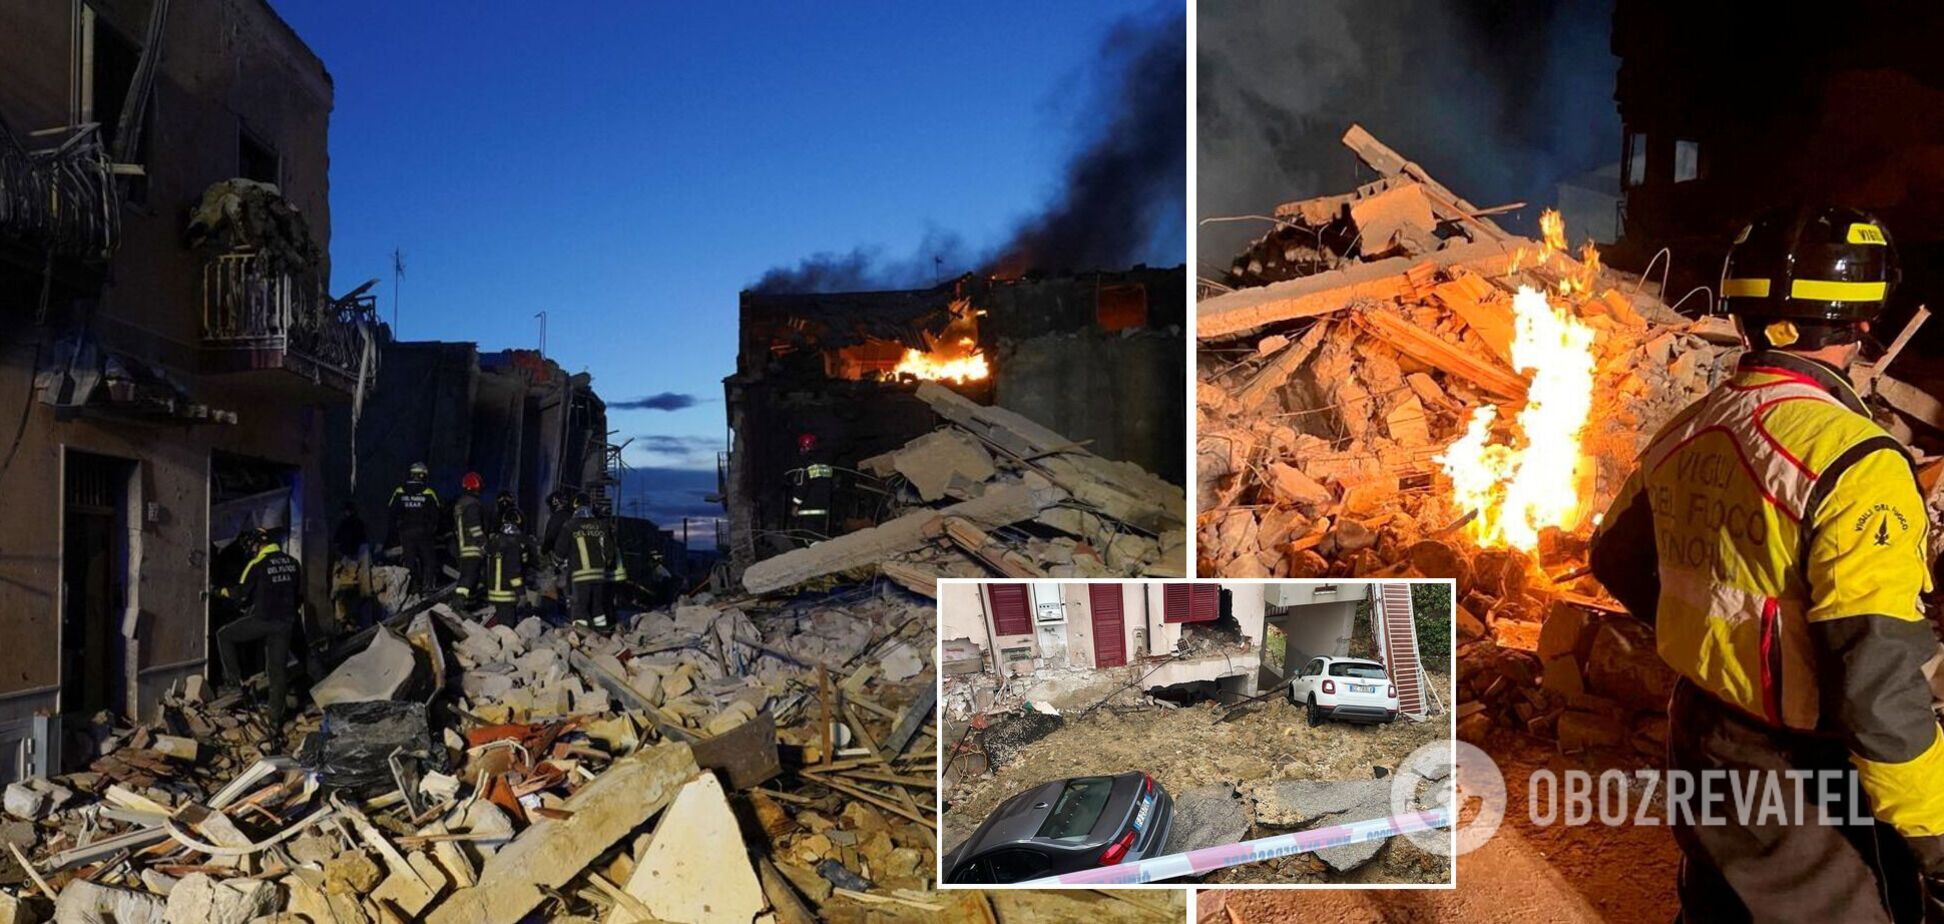 В Італії внаслідок вибуху обвалилися будинки: семеро людей загинули, пошуки зниклих продовжуються. Фото і відео